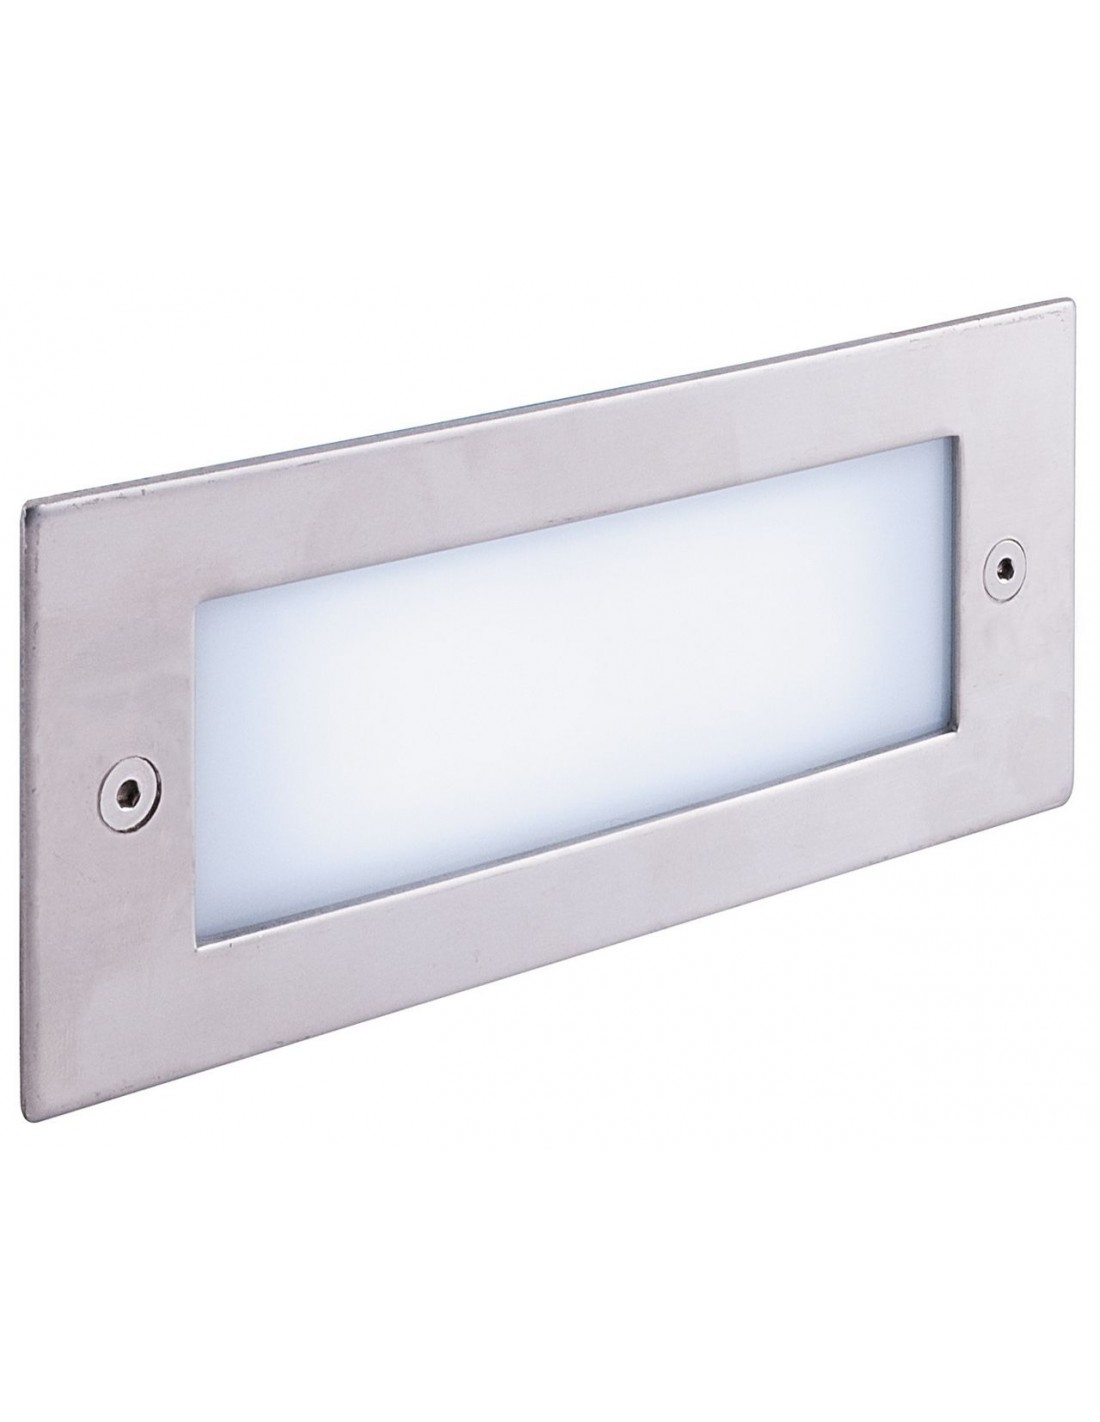 VBLED®  aluminio anodizado mate 12 mm de profundidad de montaje luz blanca cálida 0,9 W 12 V certificación IP67, para pared suelo y techo  Lámpara LED empotrable extra plana 